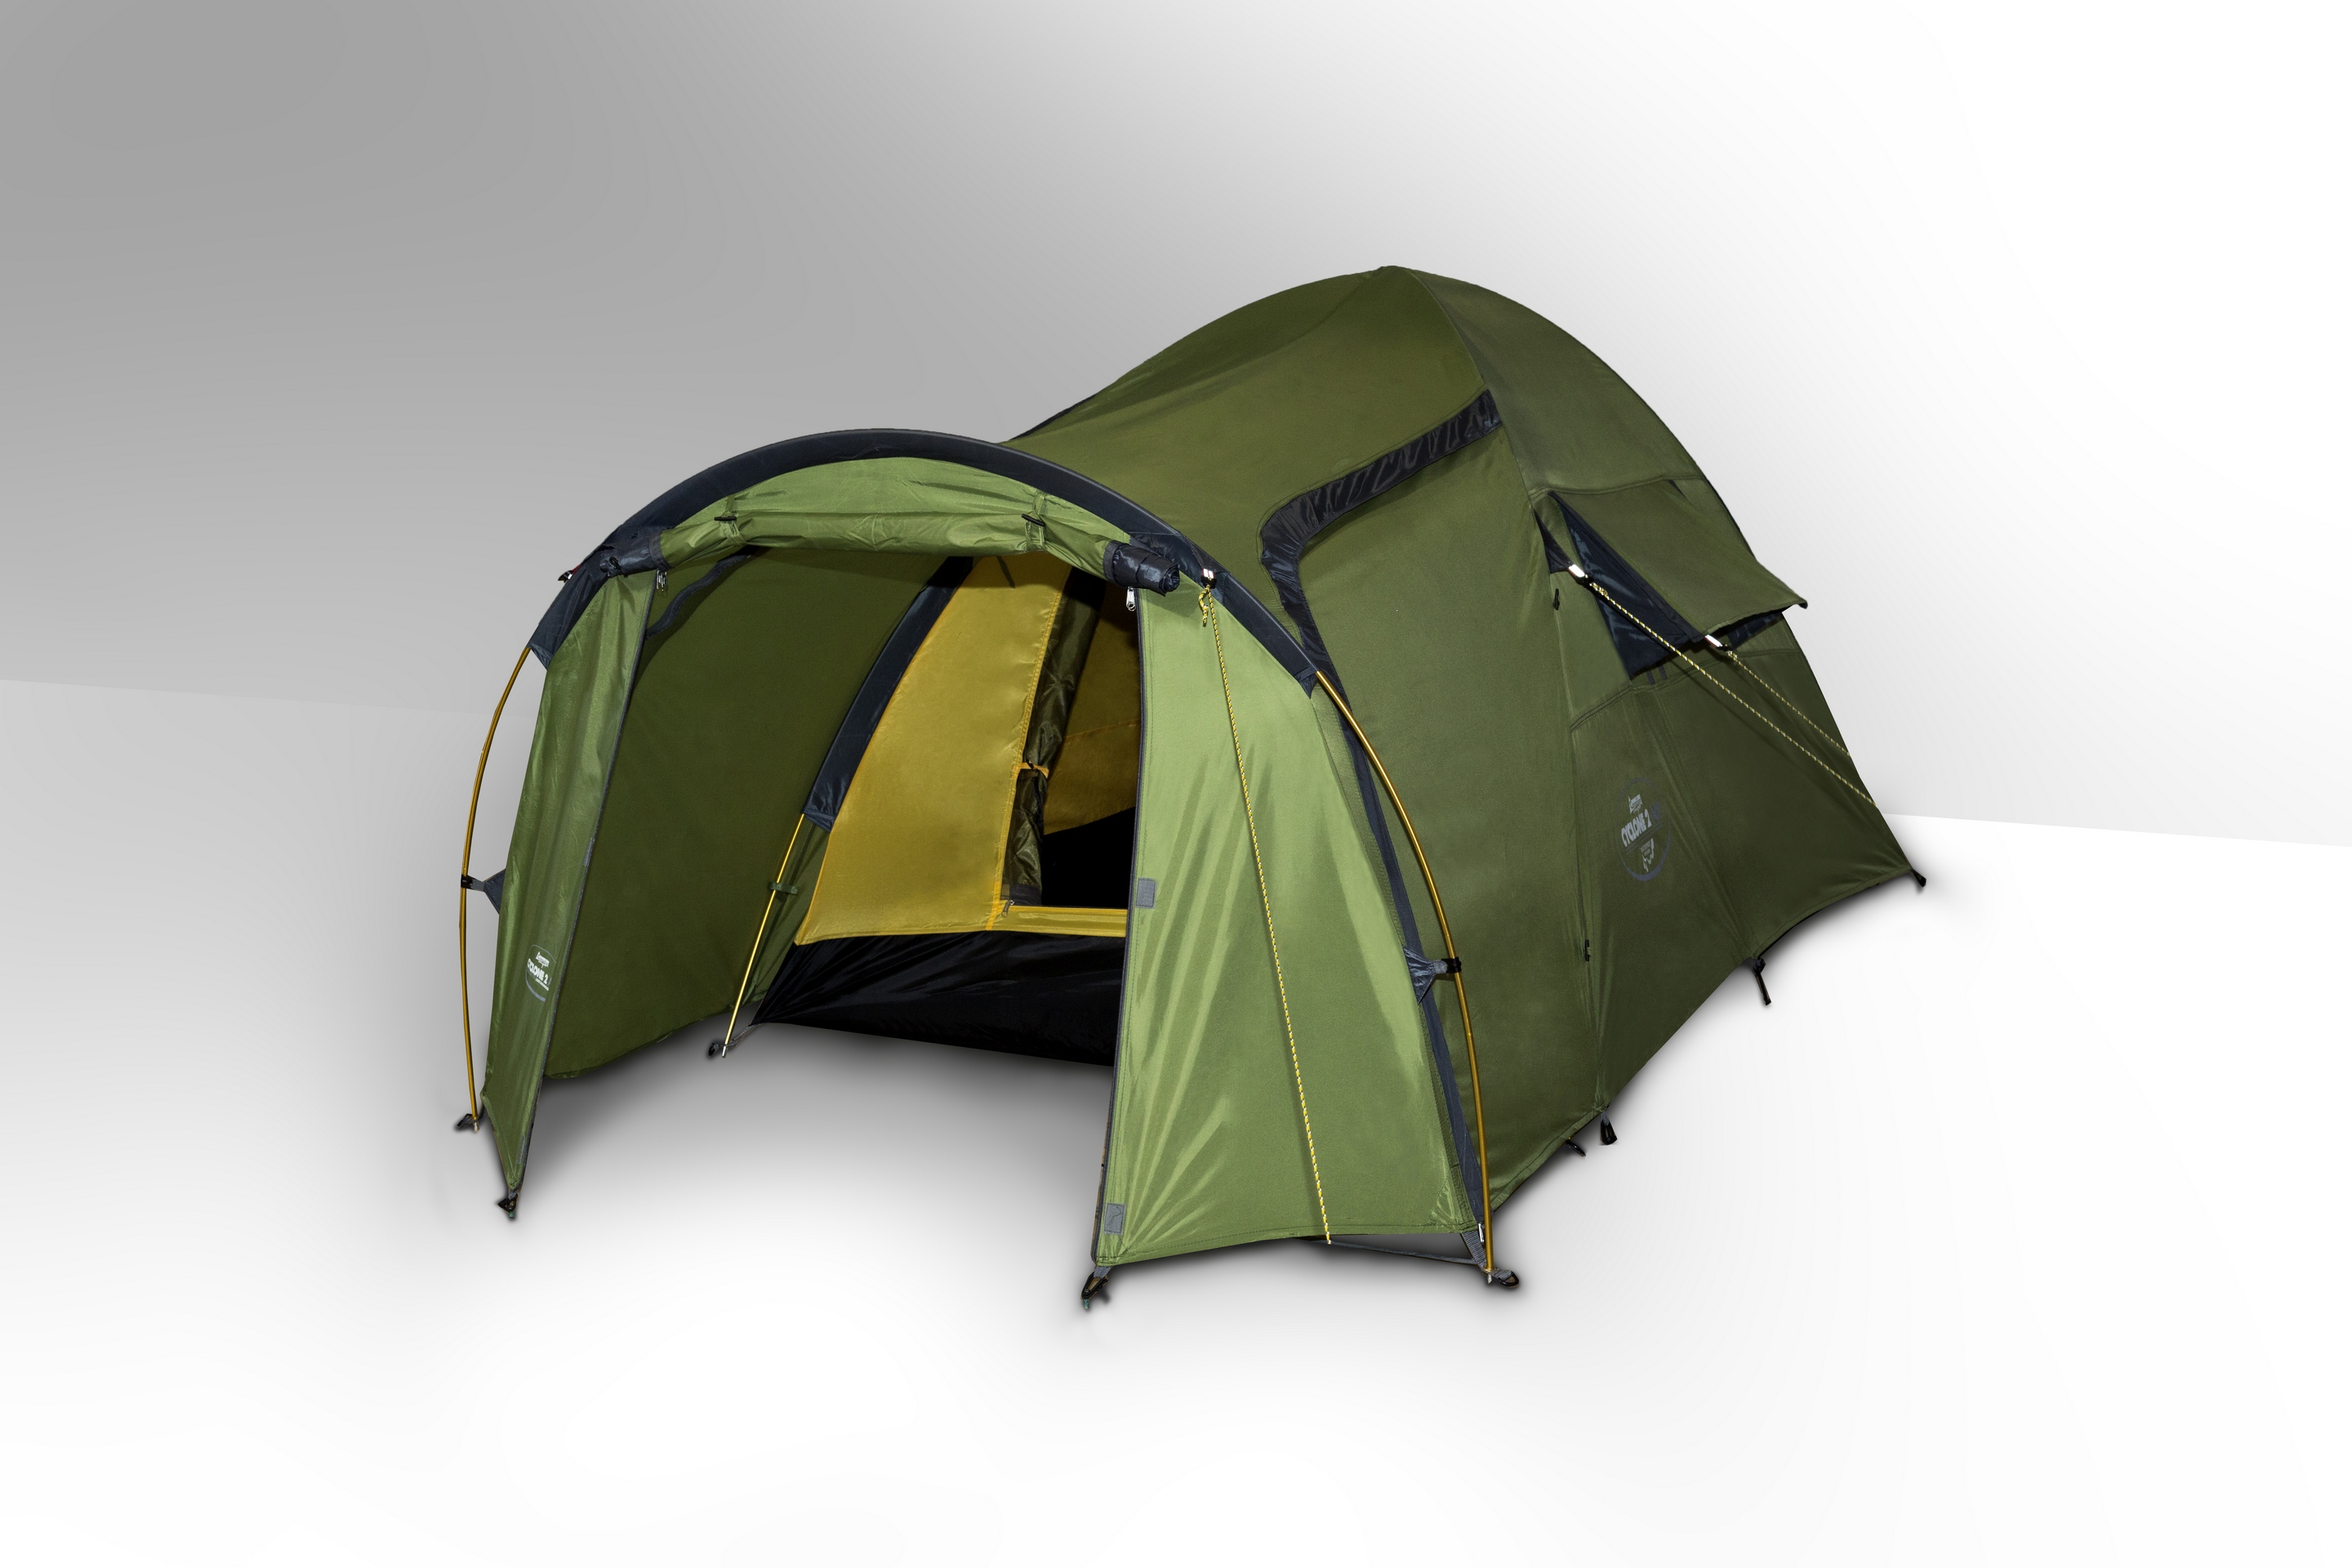 Купить палатку туристическую цены. Палатка Канадиан кемпер. Палатка туристическая Канадиан кемпер. Палатка Canadian Camper Cyclone 2 al. Канадиан кемпер палатки 3-х.